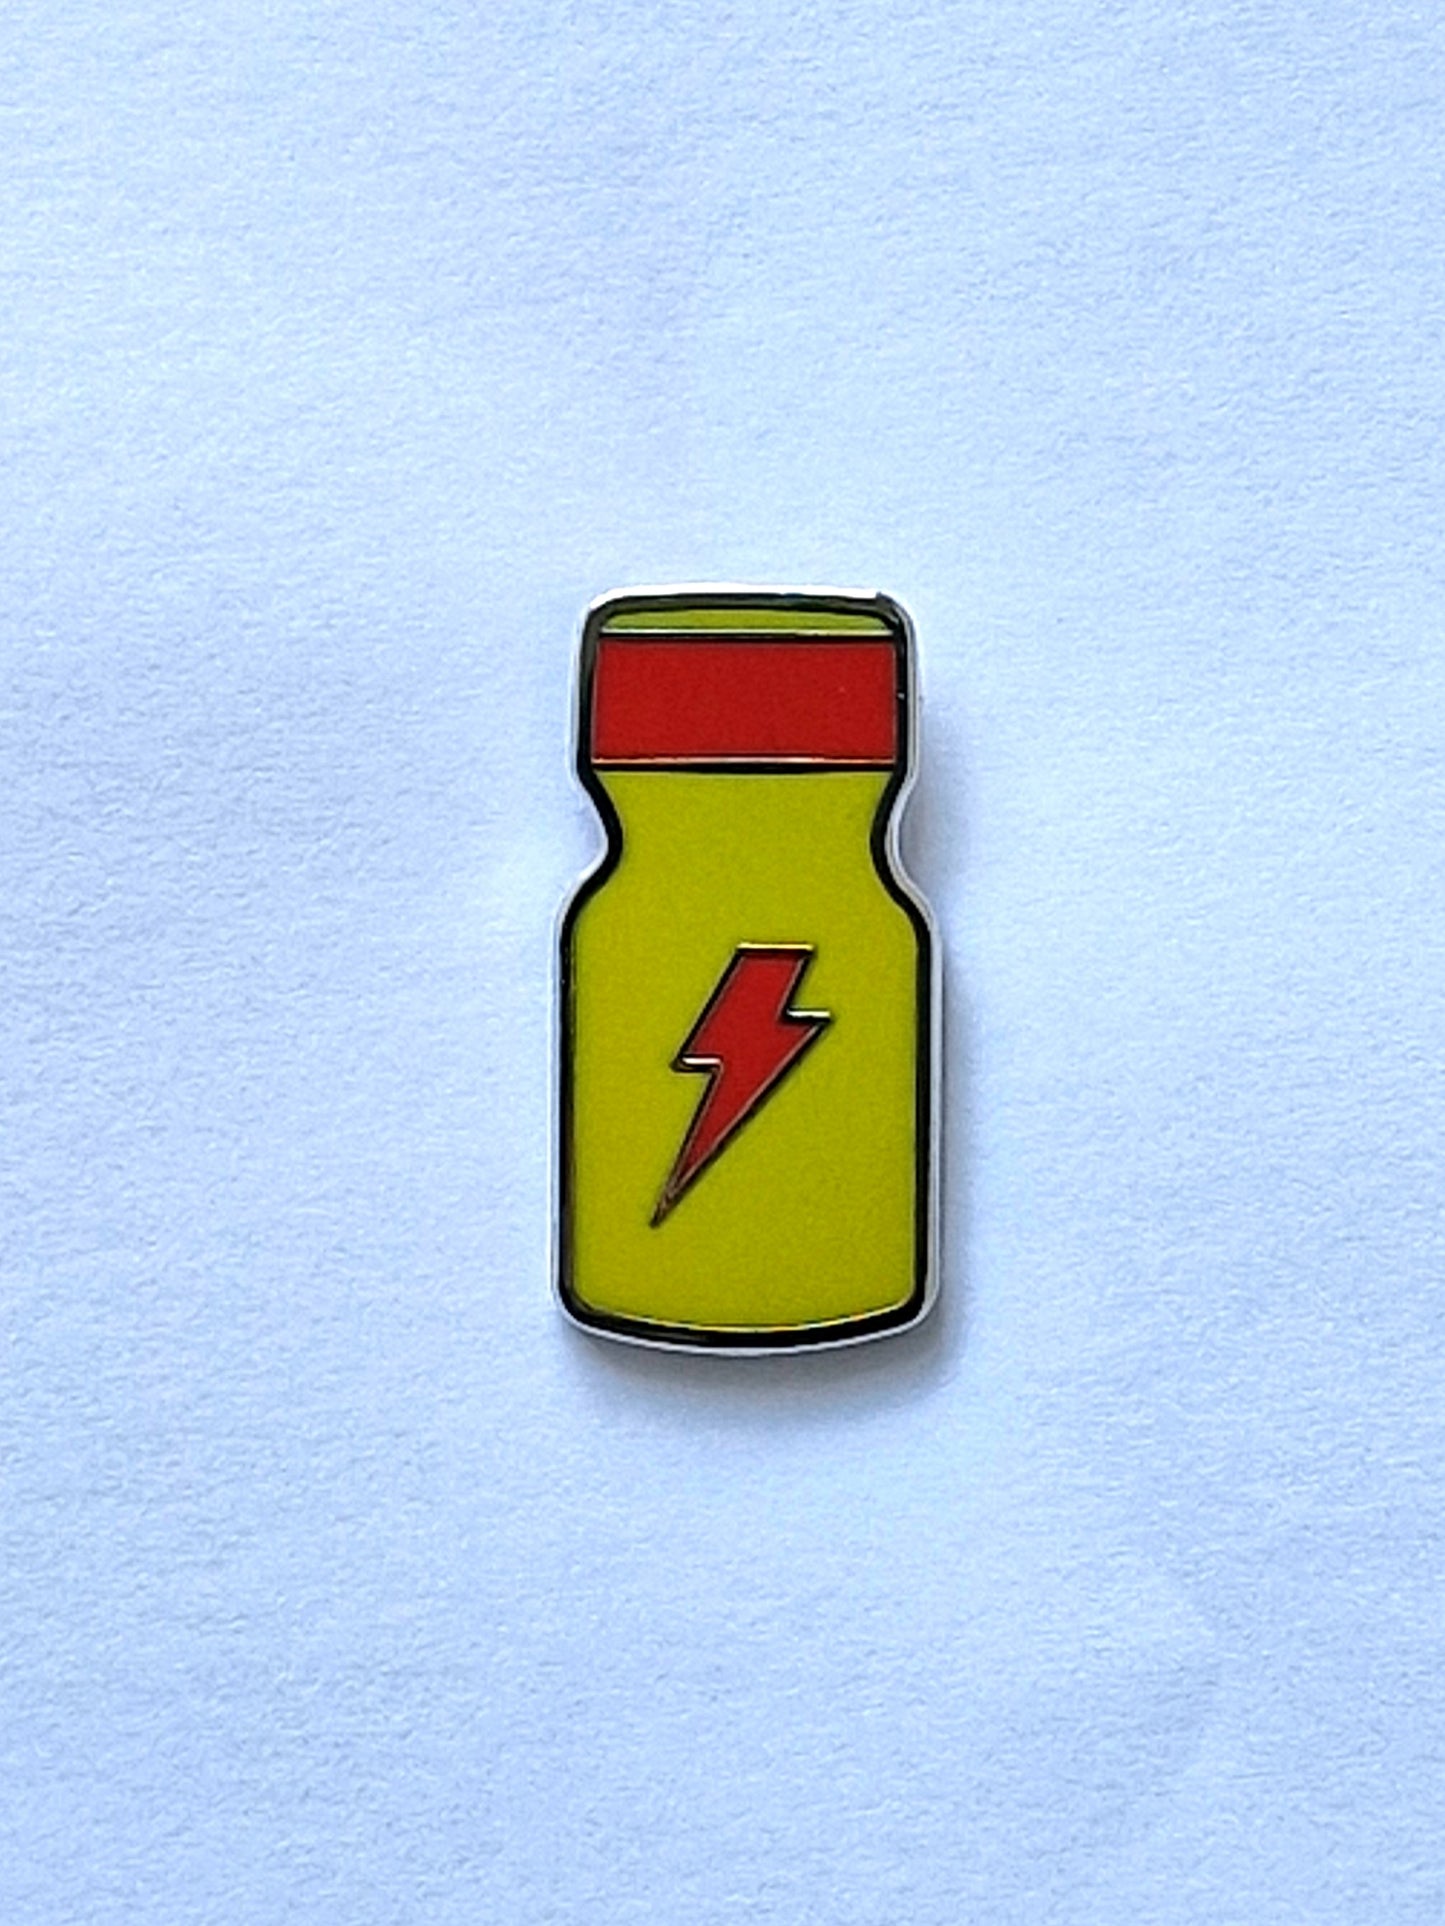 Poppersflaska med blixt i forma av en pins, en pin som är rolig och unik